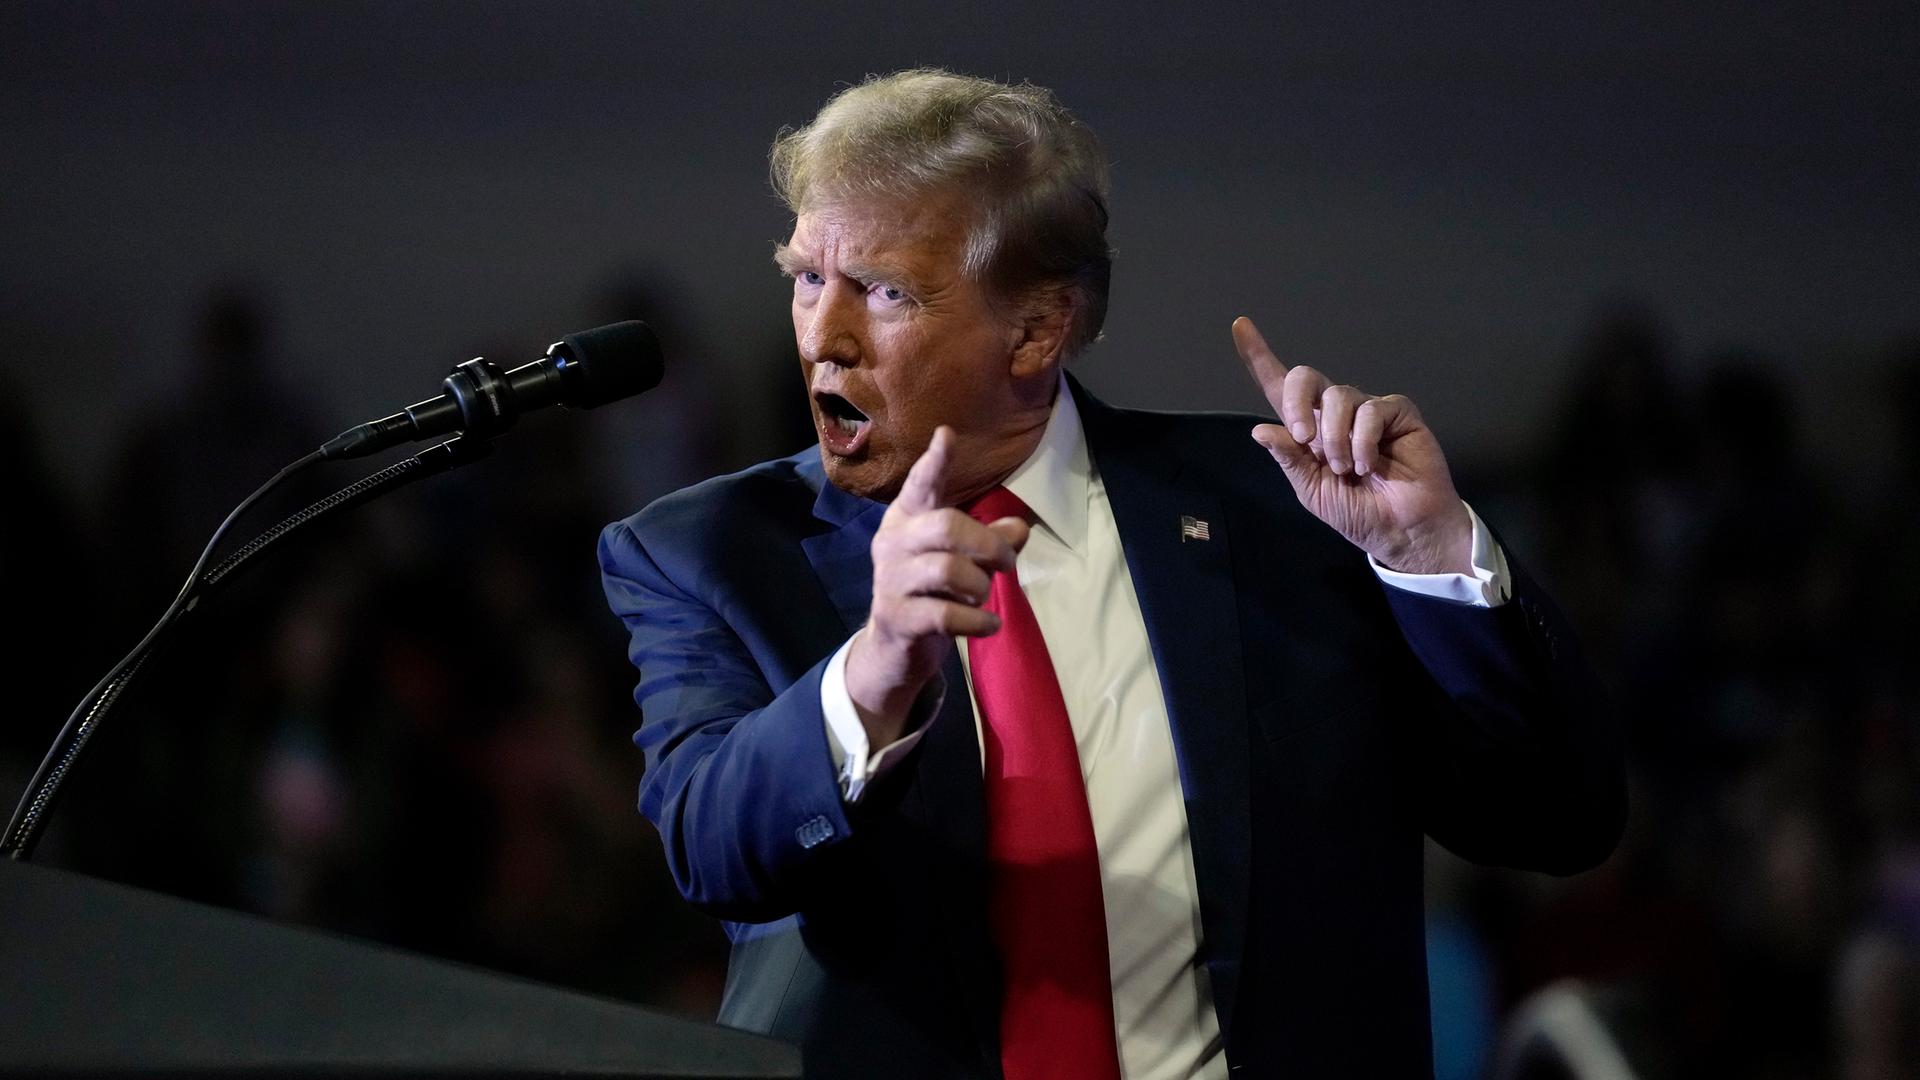 Der ehemalige US-Präsident Donald Trump spricht bei einer Wahlkampfveranstaltung in South Carolina. Er gestikuliert und sieht wütend aus.